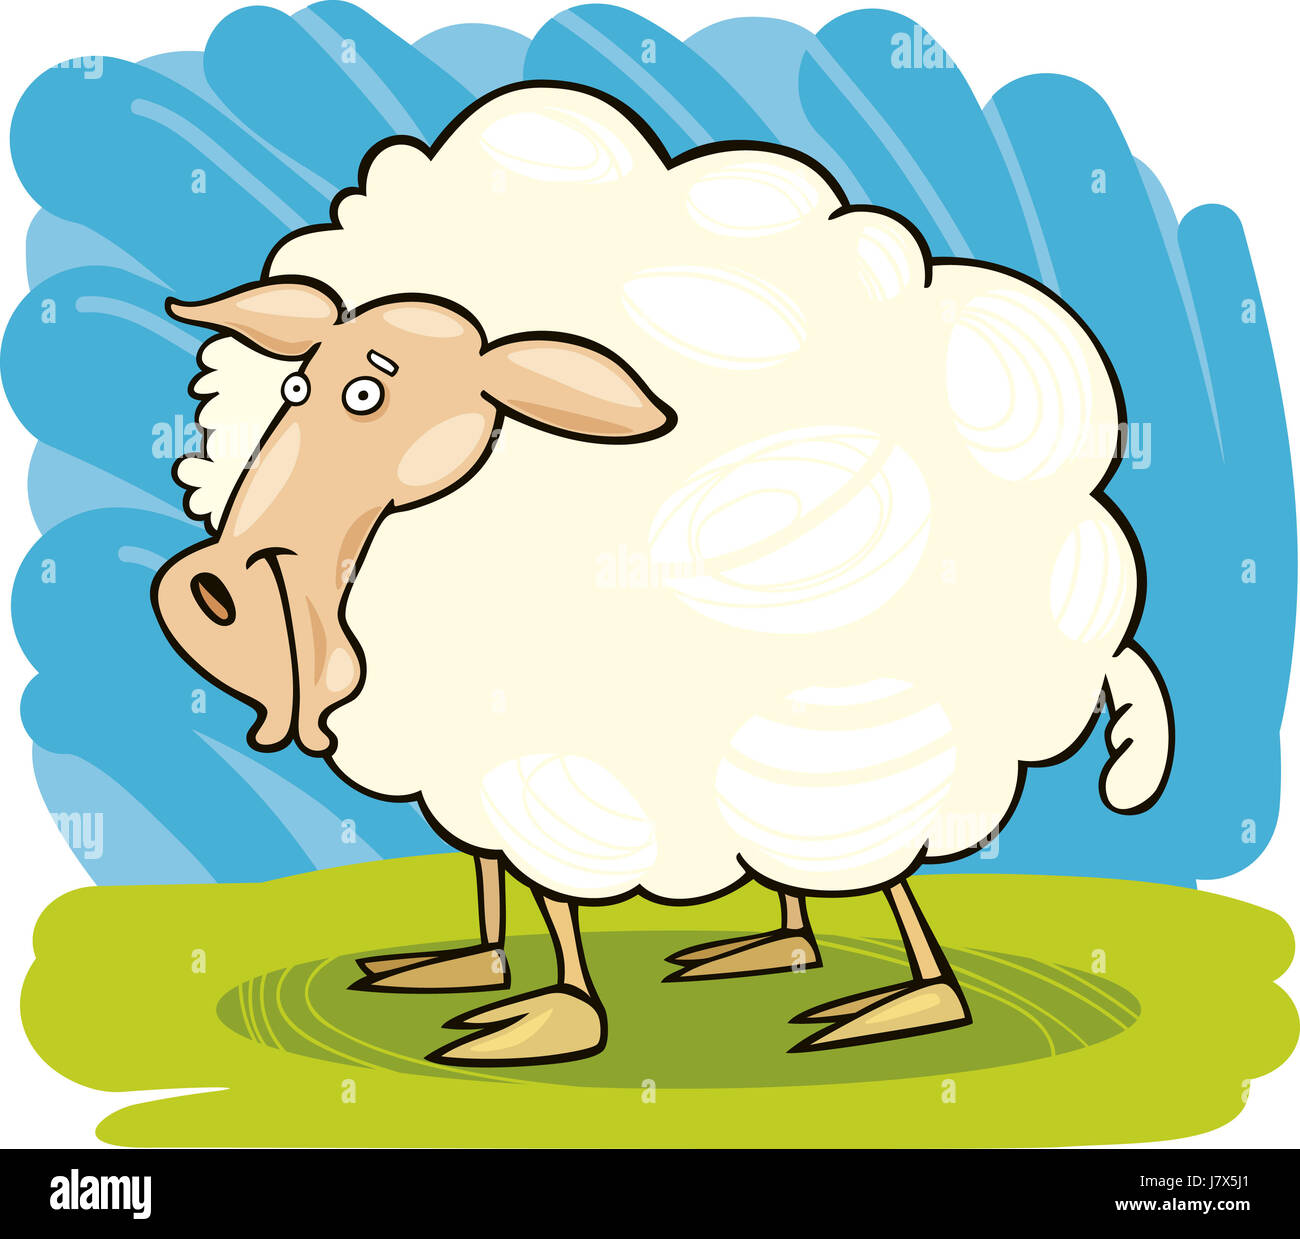 Schafe Wolle Abbildung Bauernhof lustige Weide Cartoon Comic Lachen Lachen  Lachen Stockfotografie - Alamy